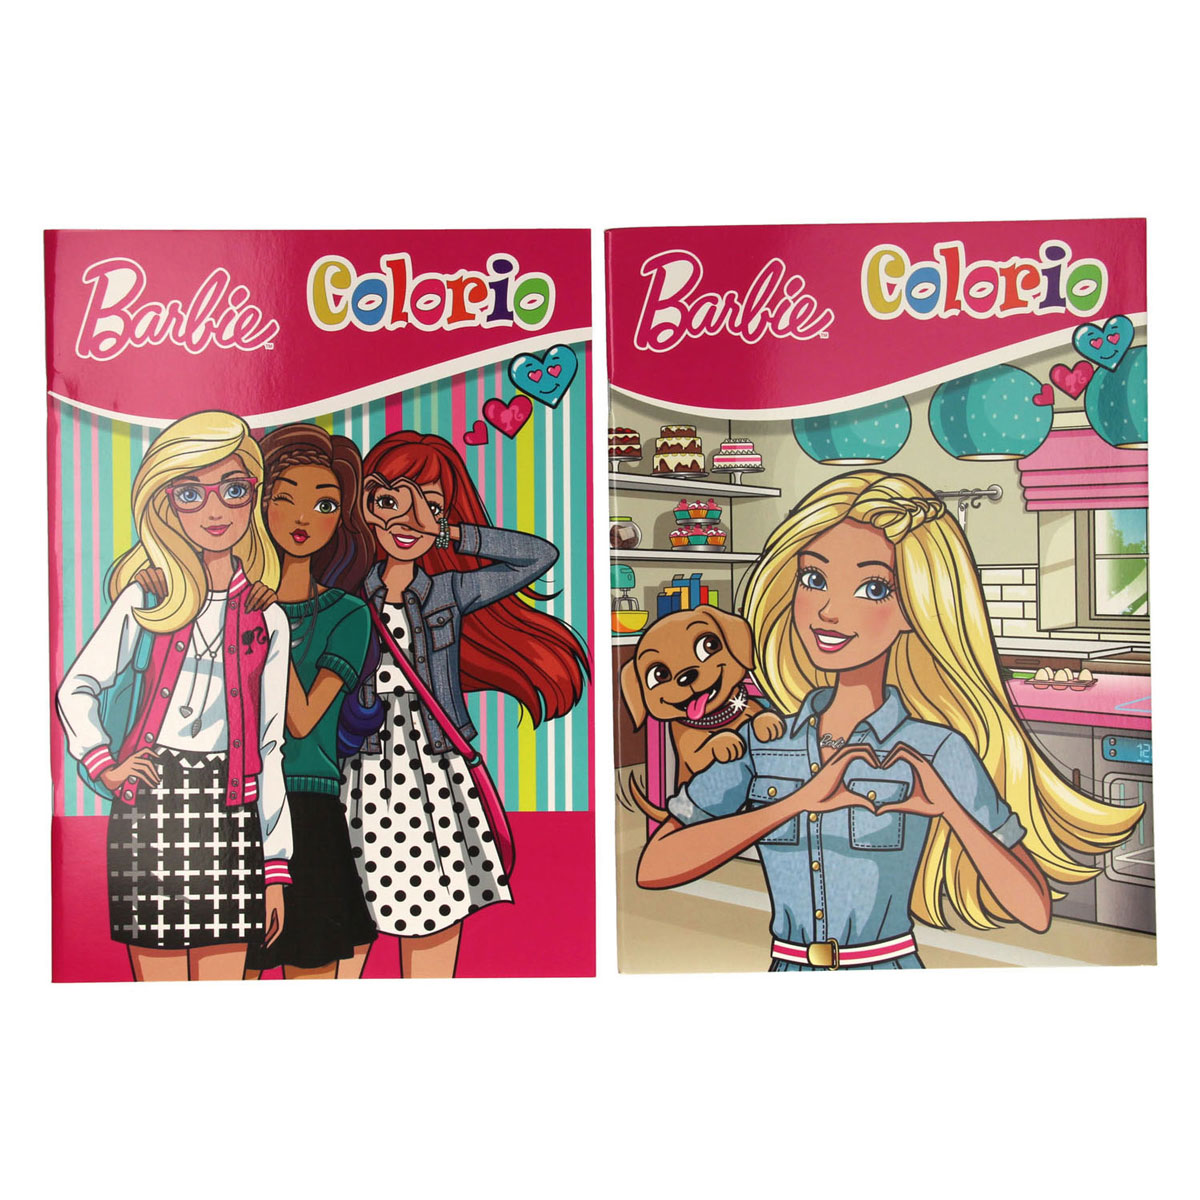 Barbie Kleurboek 32 Pagina's - Kleurboek Meisjes - Kleurboek Kinderen - Tekeningen - Inkleuren - Kleurplaat - Colouring Book - Kleurplezier